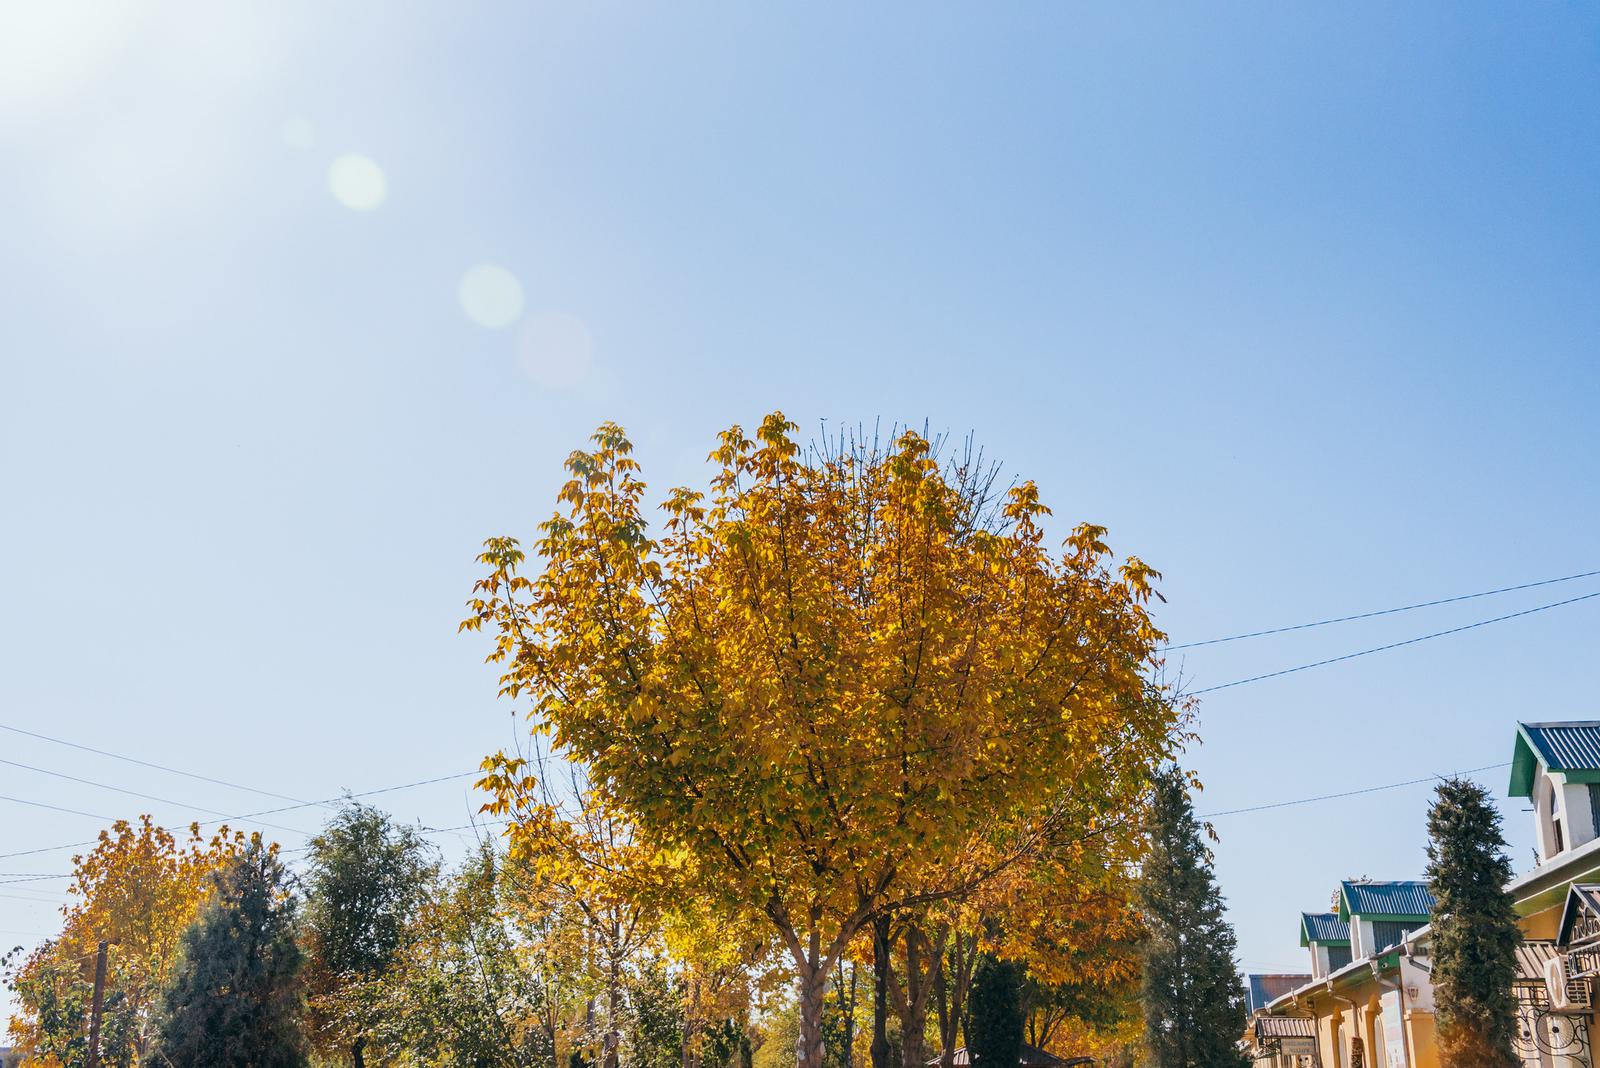 A Golden Tree in Bustan